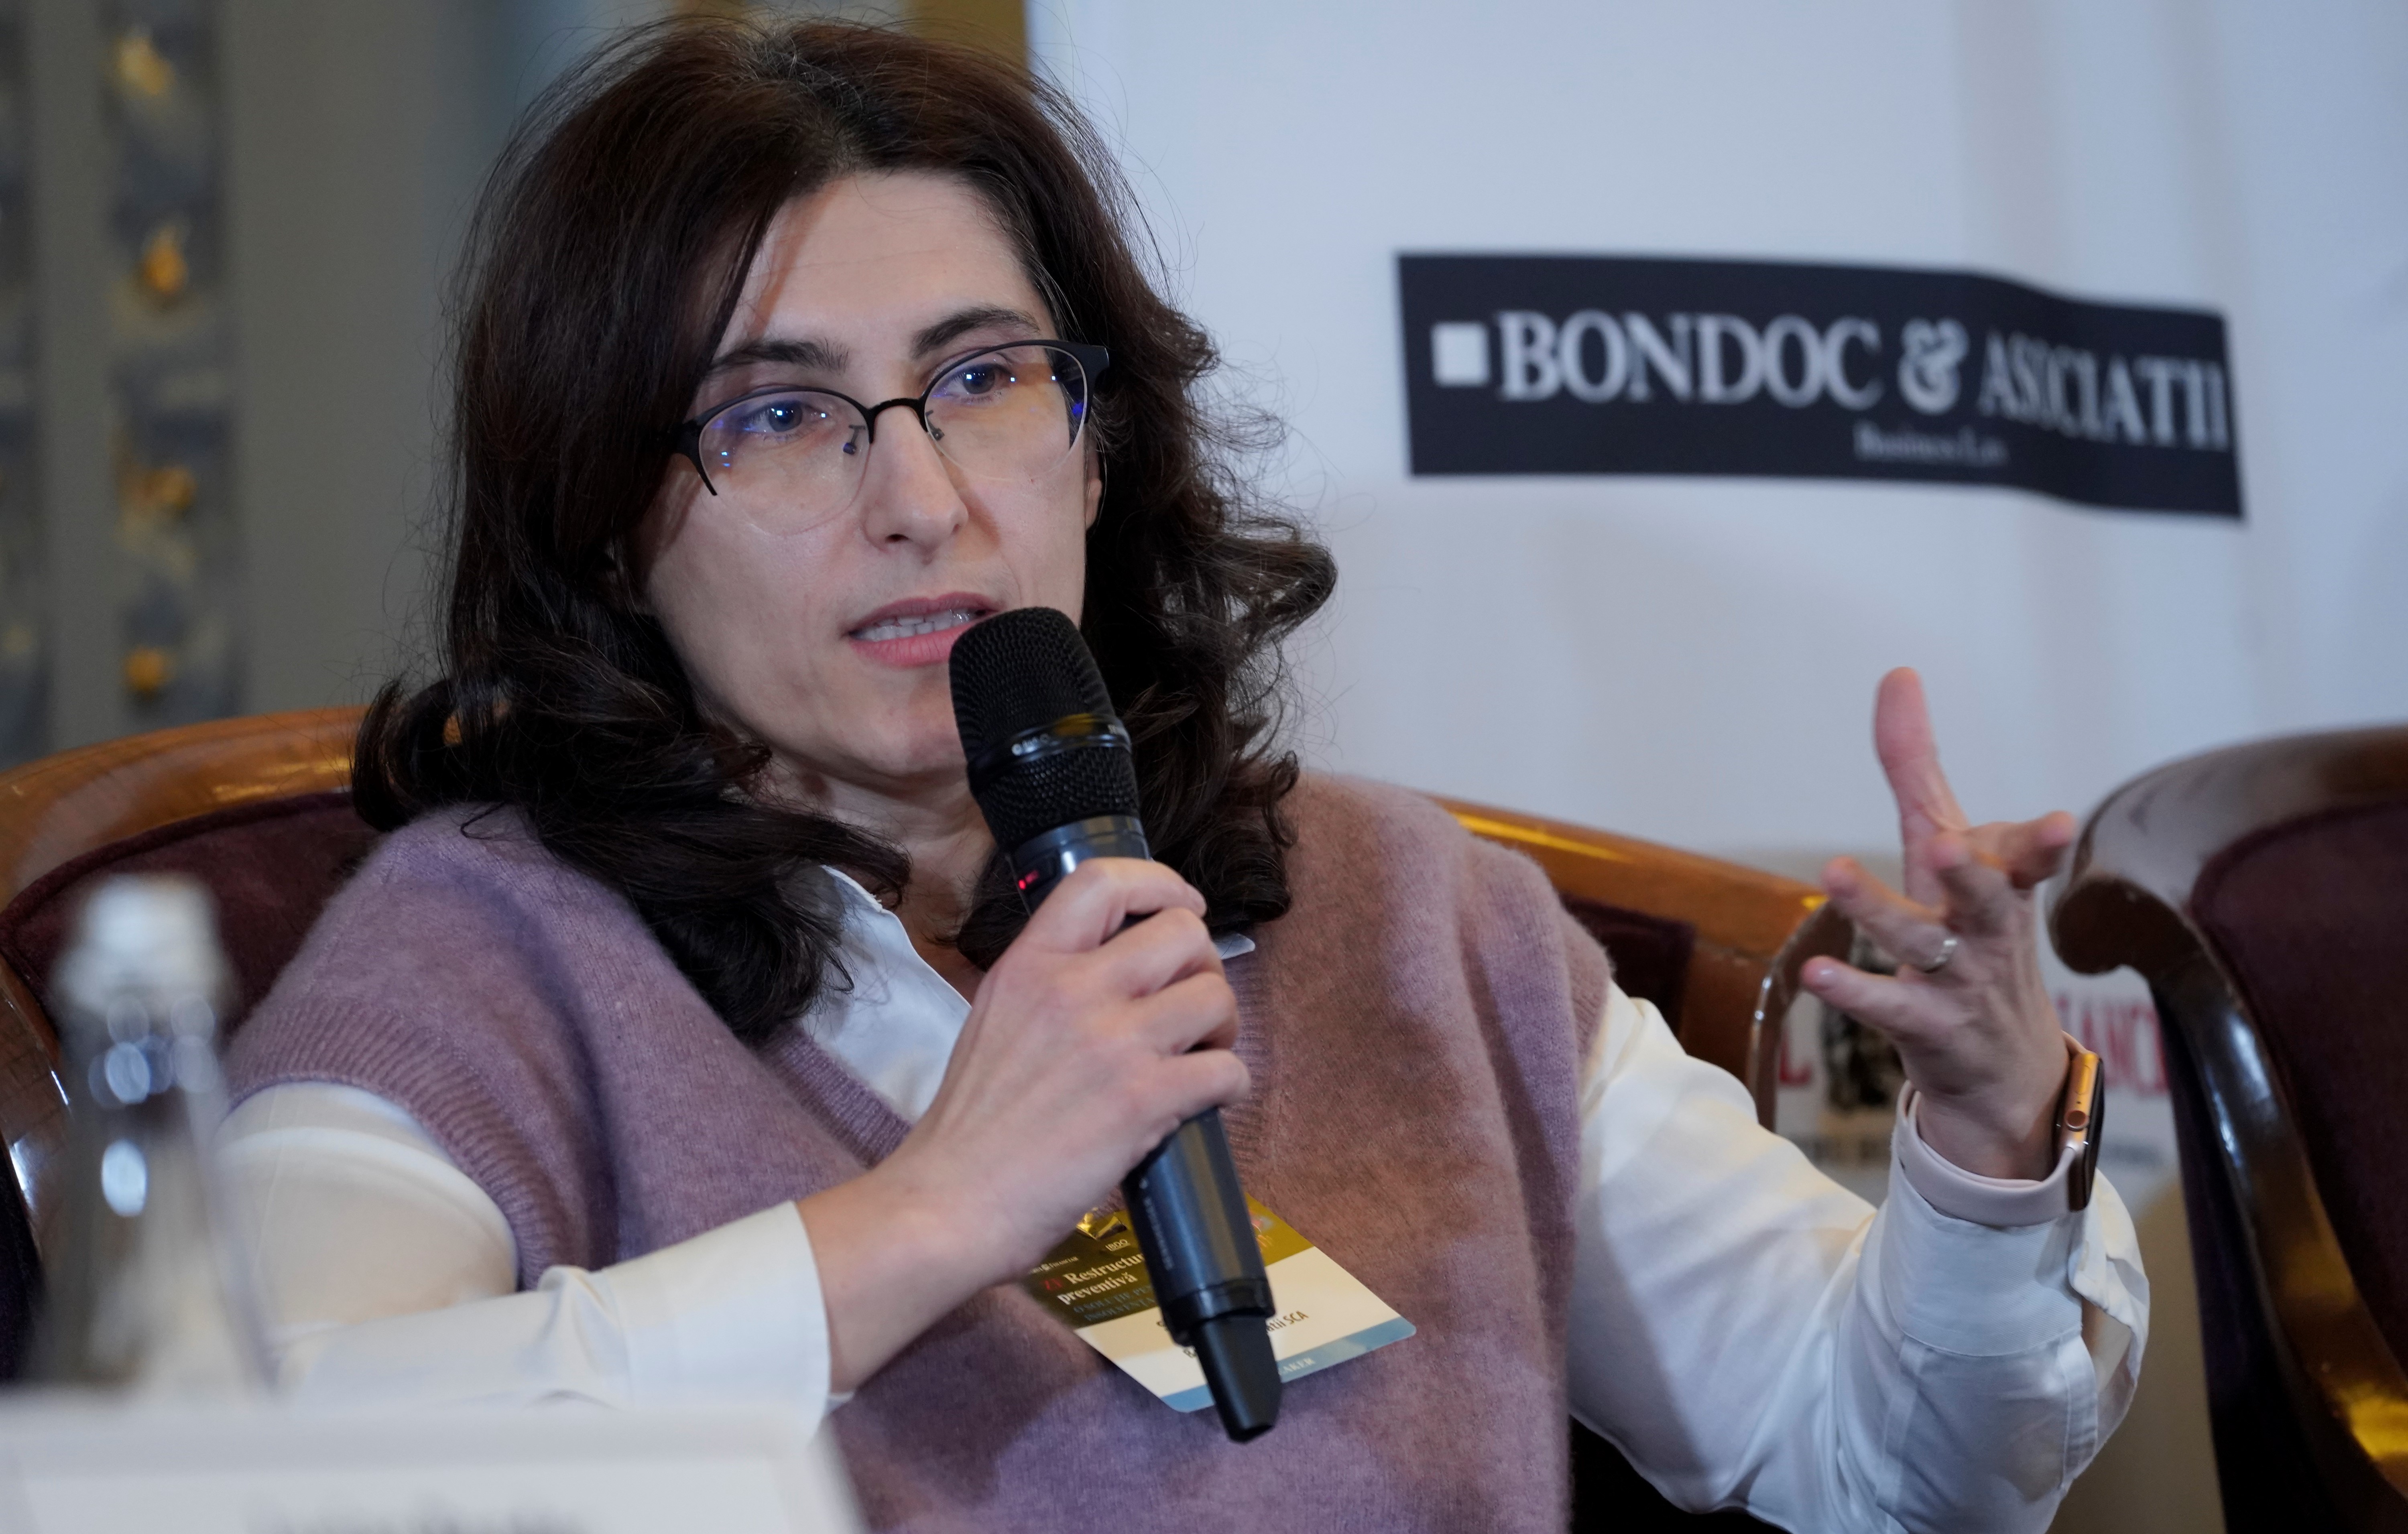 Simona Petrişor, Partner Bondoc şi Asociaţii SCA: Prima condiţie consacrată pentru a avea acces la procedurile de restructurare preventivă este starea de dificultate